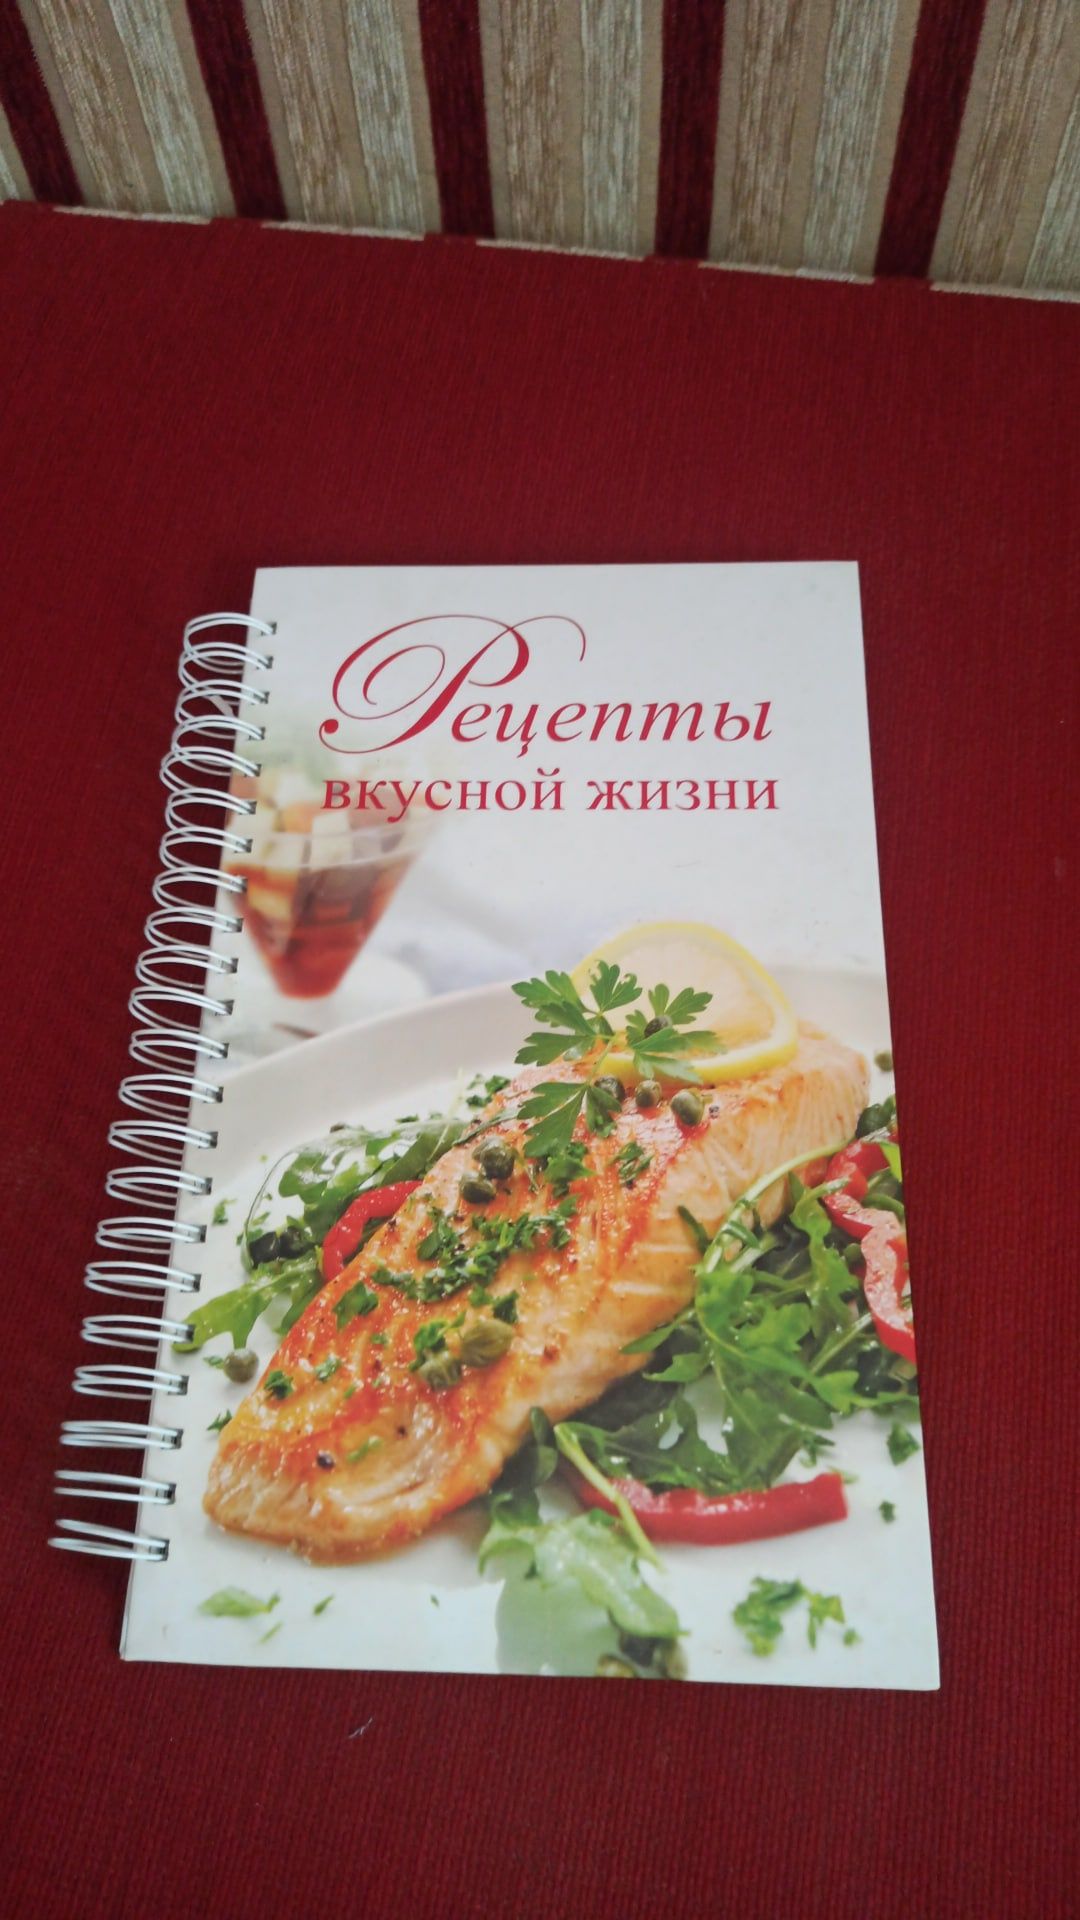 Книга рецептов(рецепты вкусной жизни)